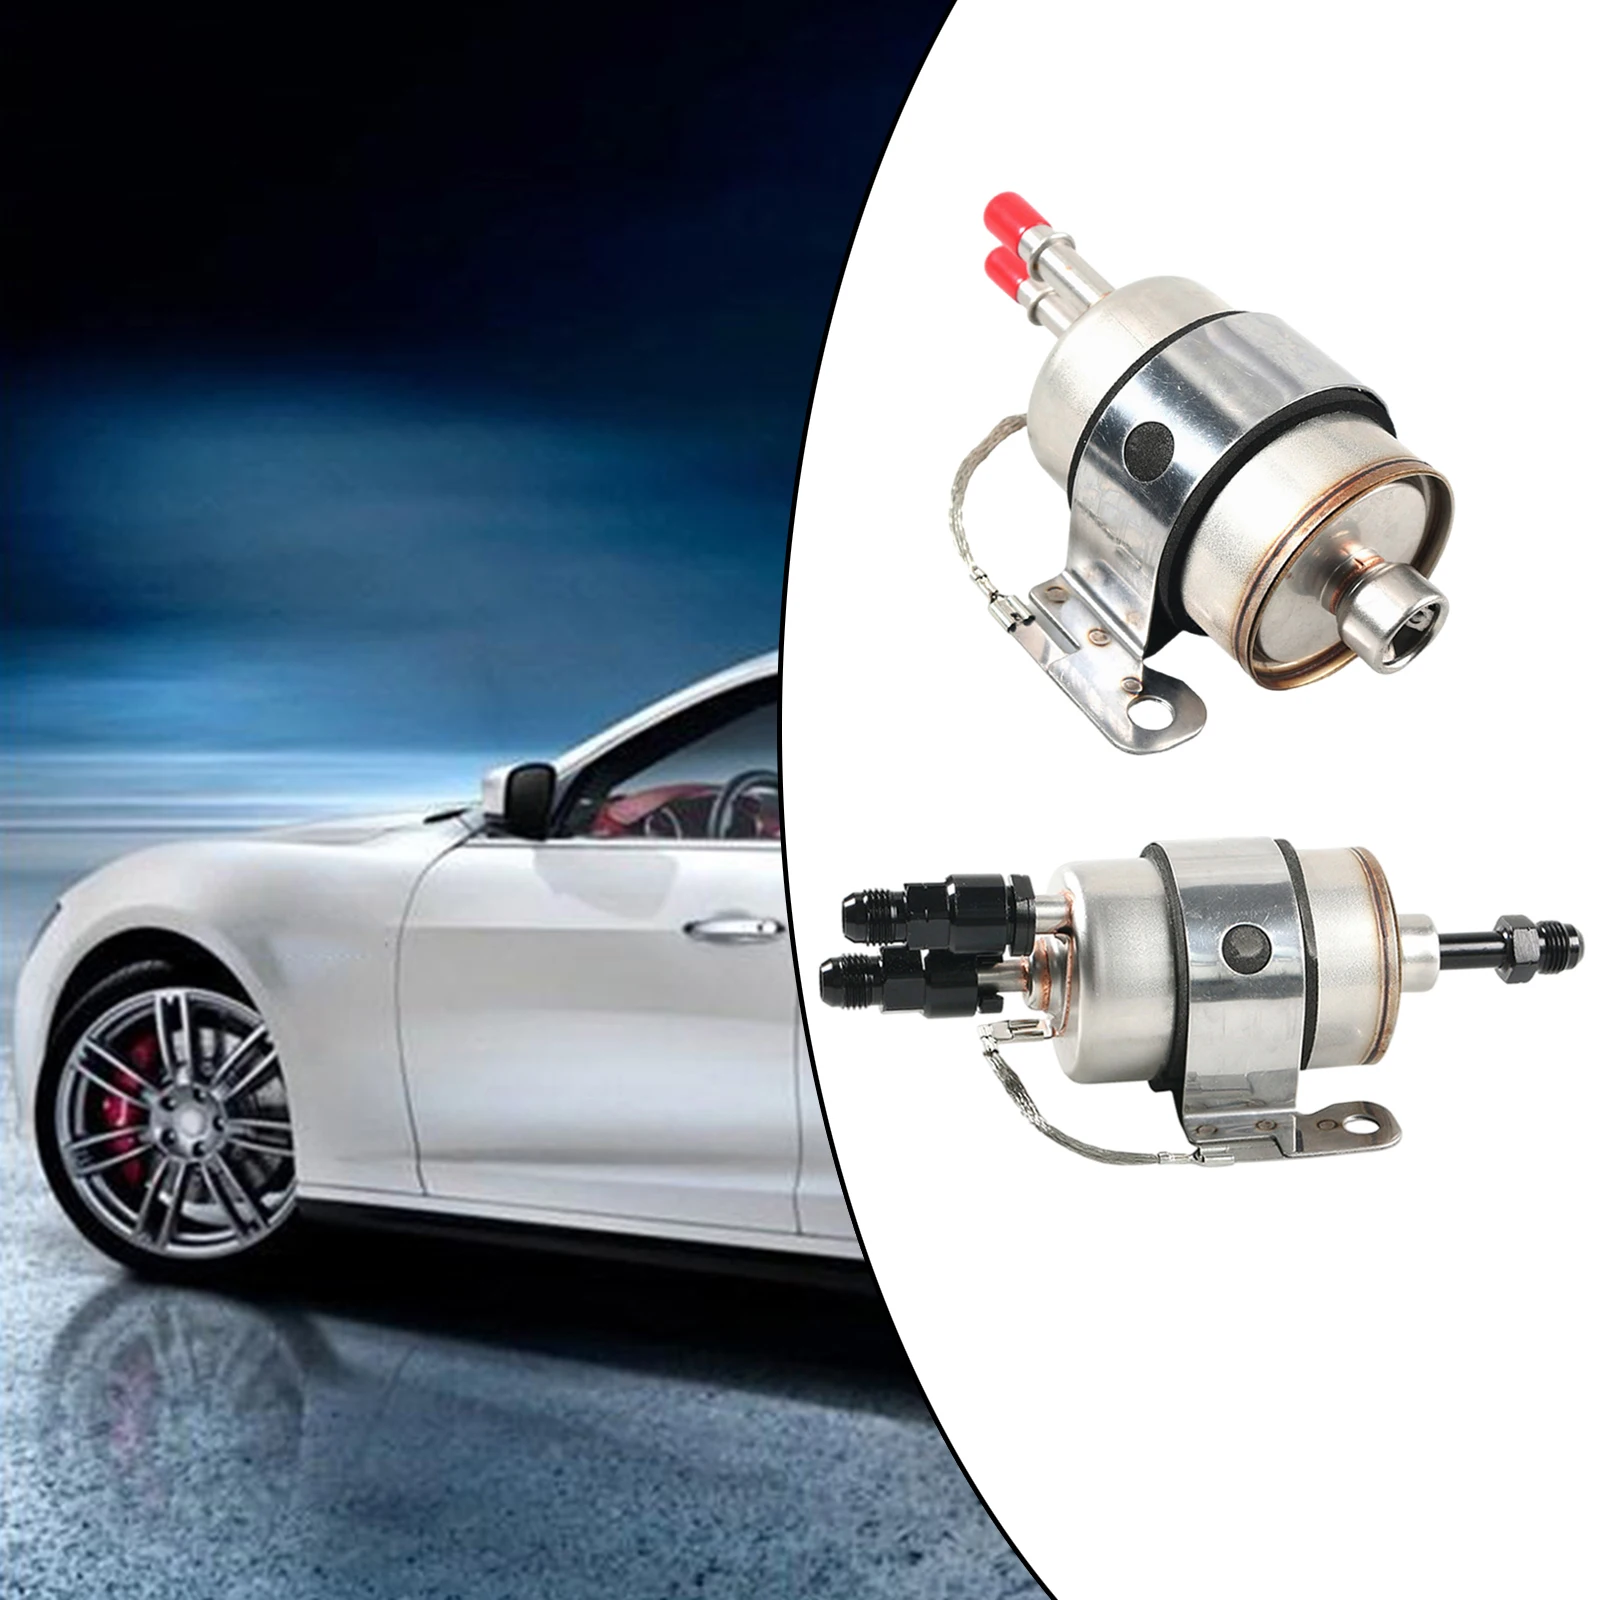 Fuel Filter Regulator Filter Assembly Pressure Regulator Lq4 Fit for LS Conversion Car Engine